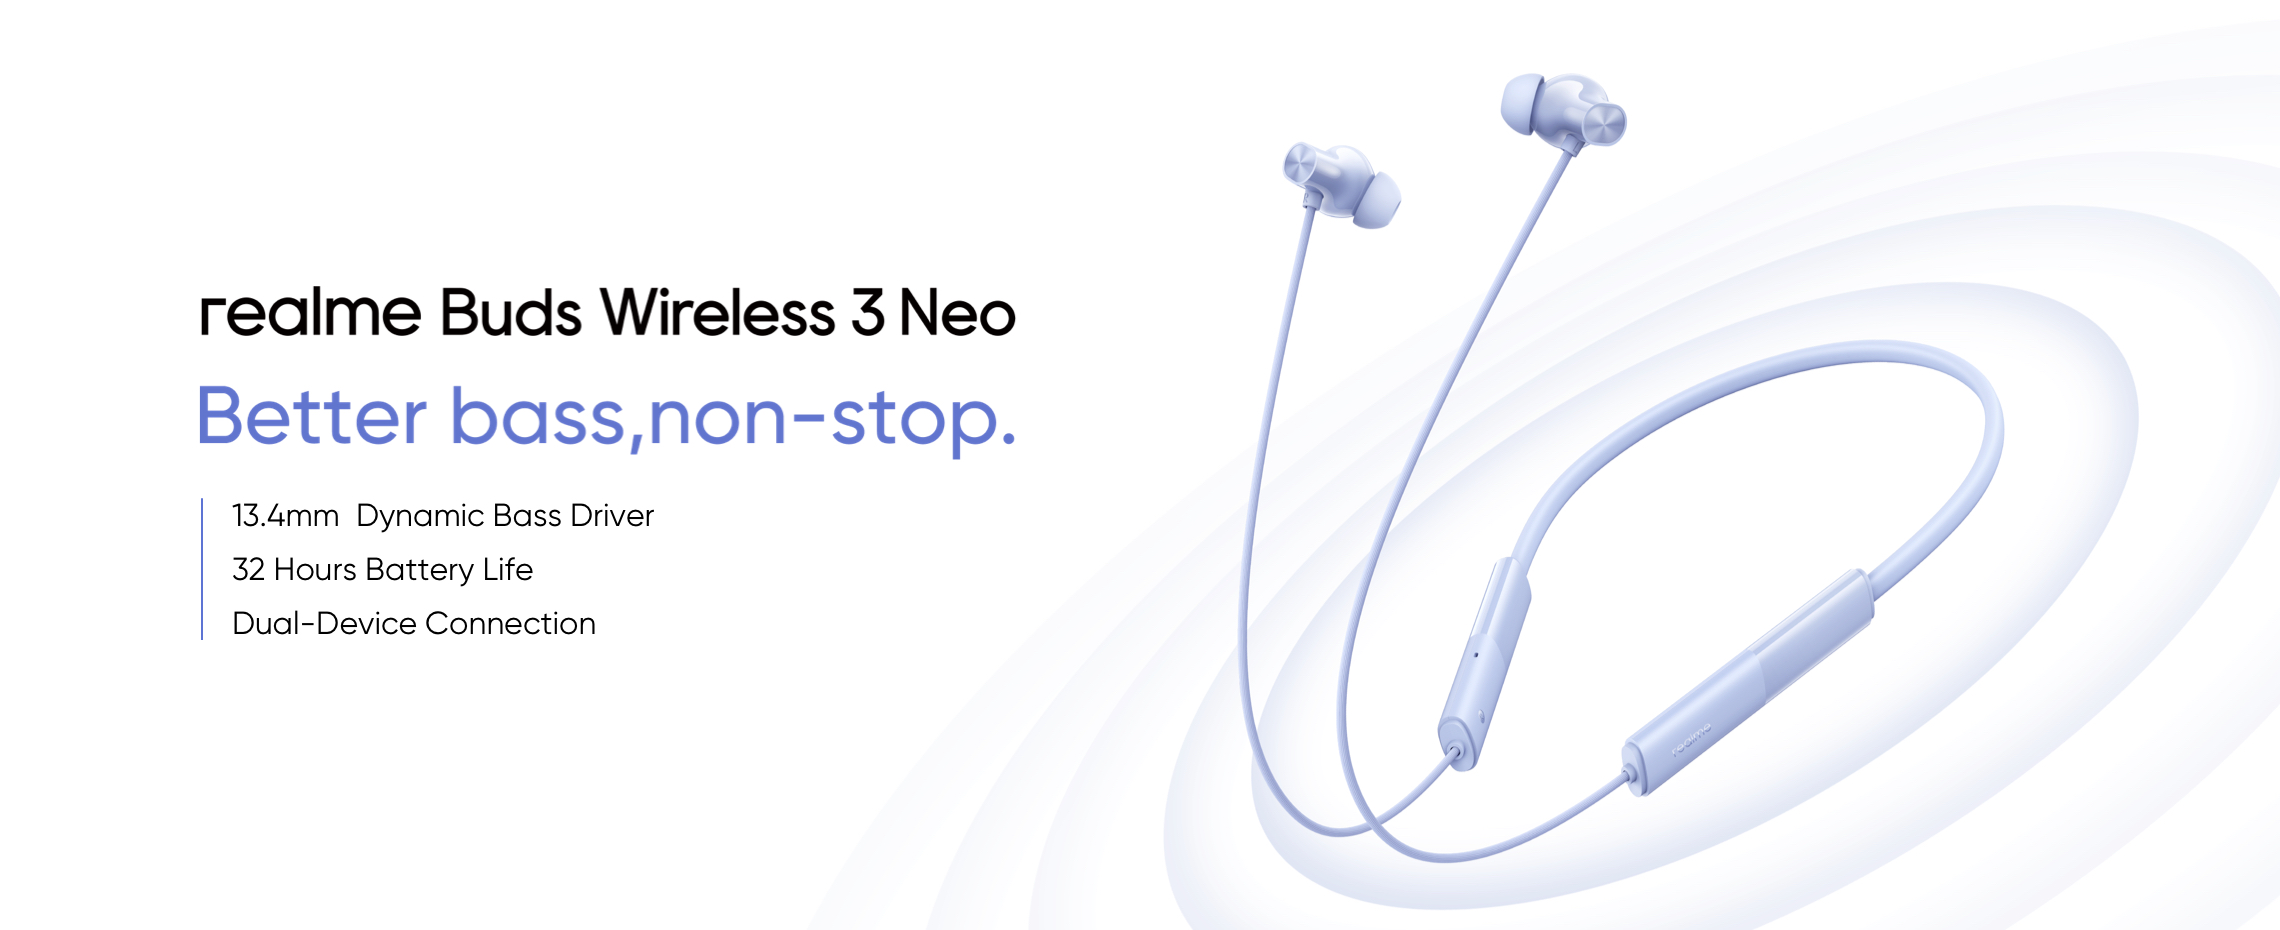 realme ogłosiło Buds Wireless 3 Neo z Bluetooth 5.4, Google Fast Pair i do 32 godzin pracy na baterii za 16 USD